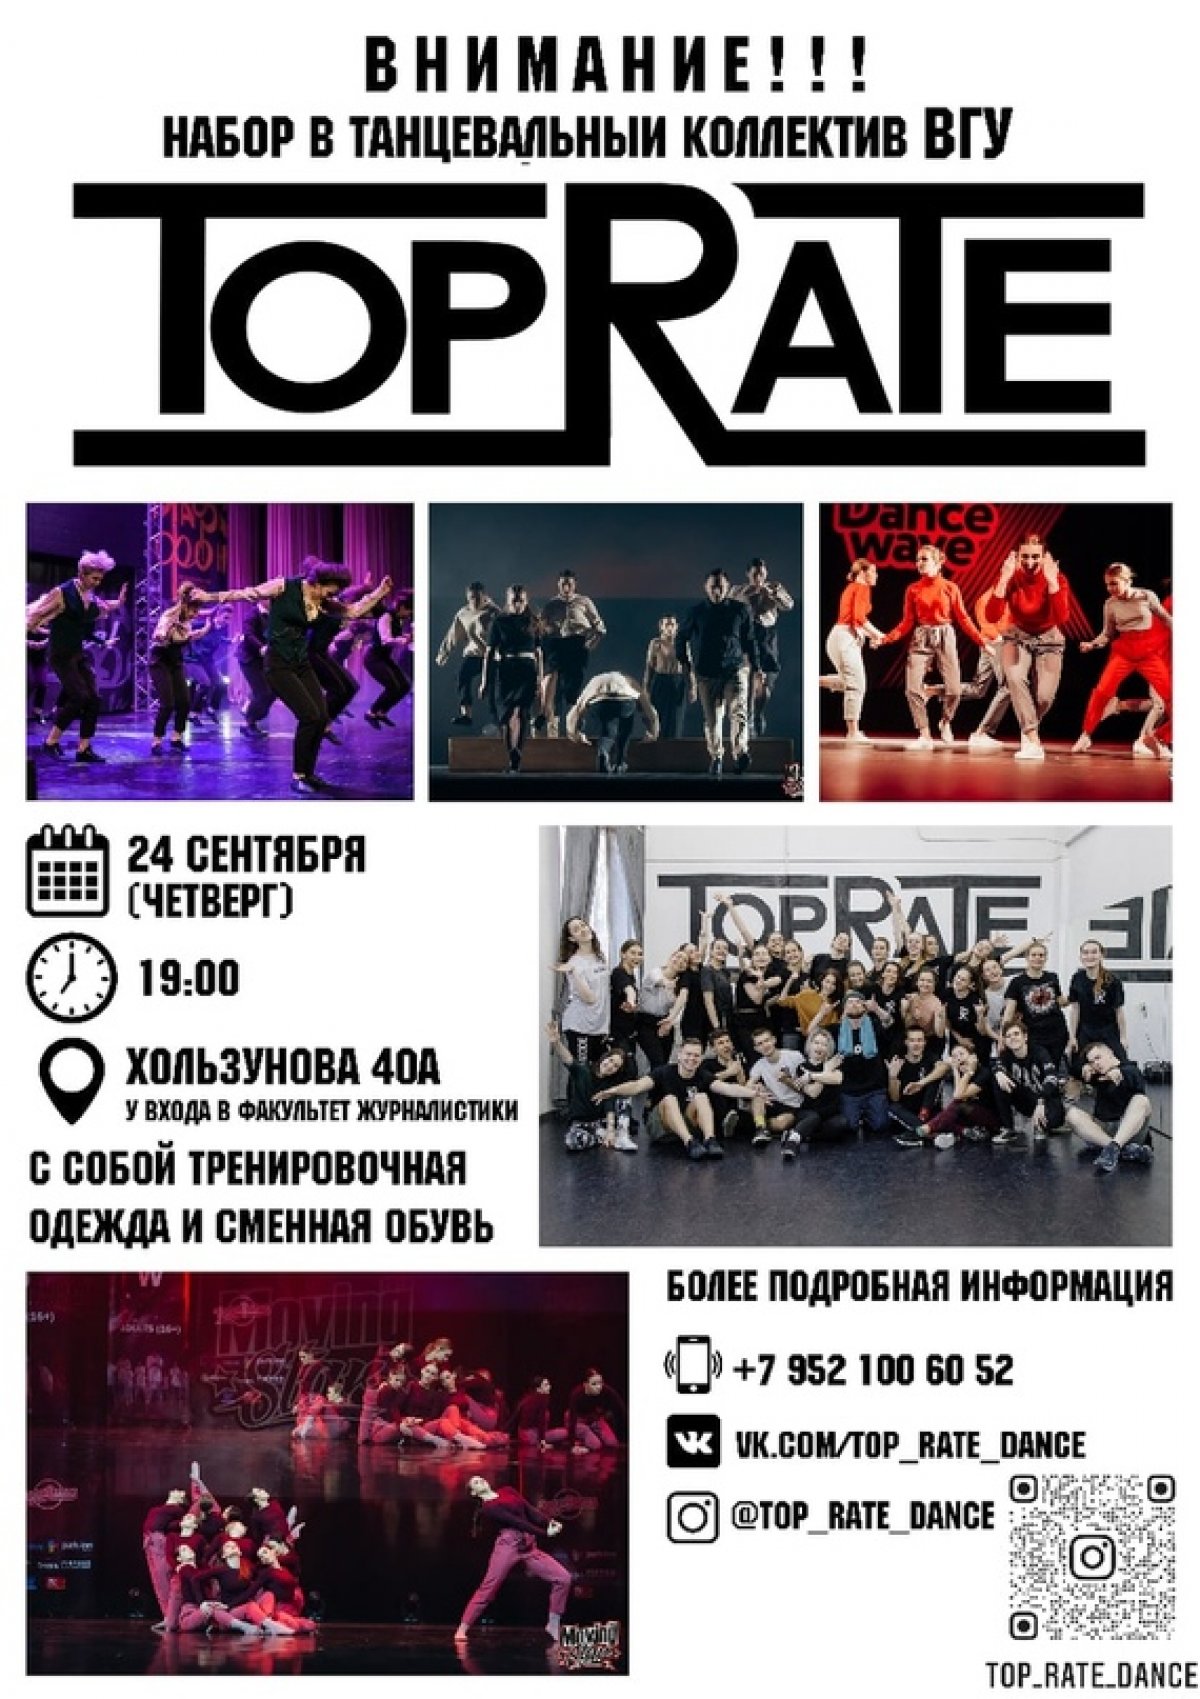 Танцевальный коллектив «Top Rate» привез в Воронеж очередную победу, став лауреатом 1 степени на Российской студенческой весне